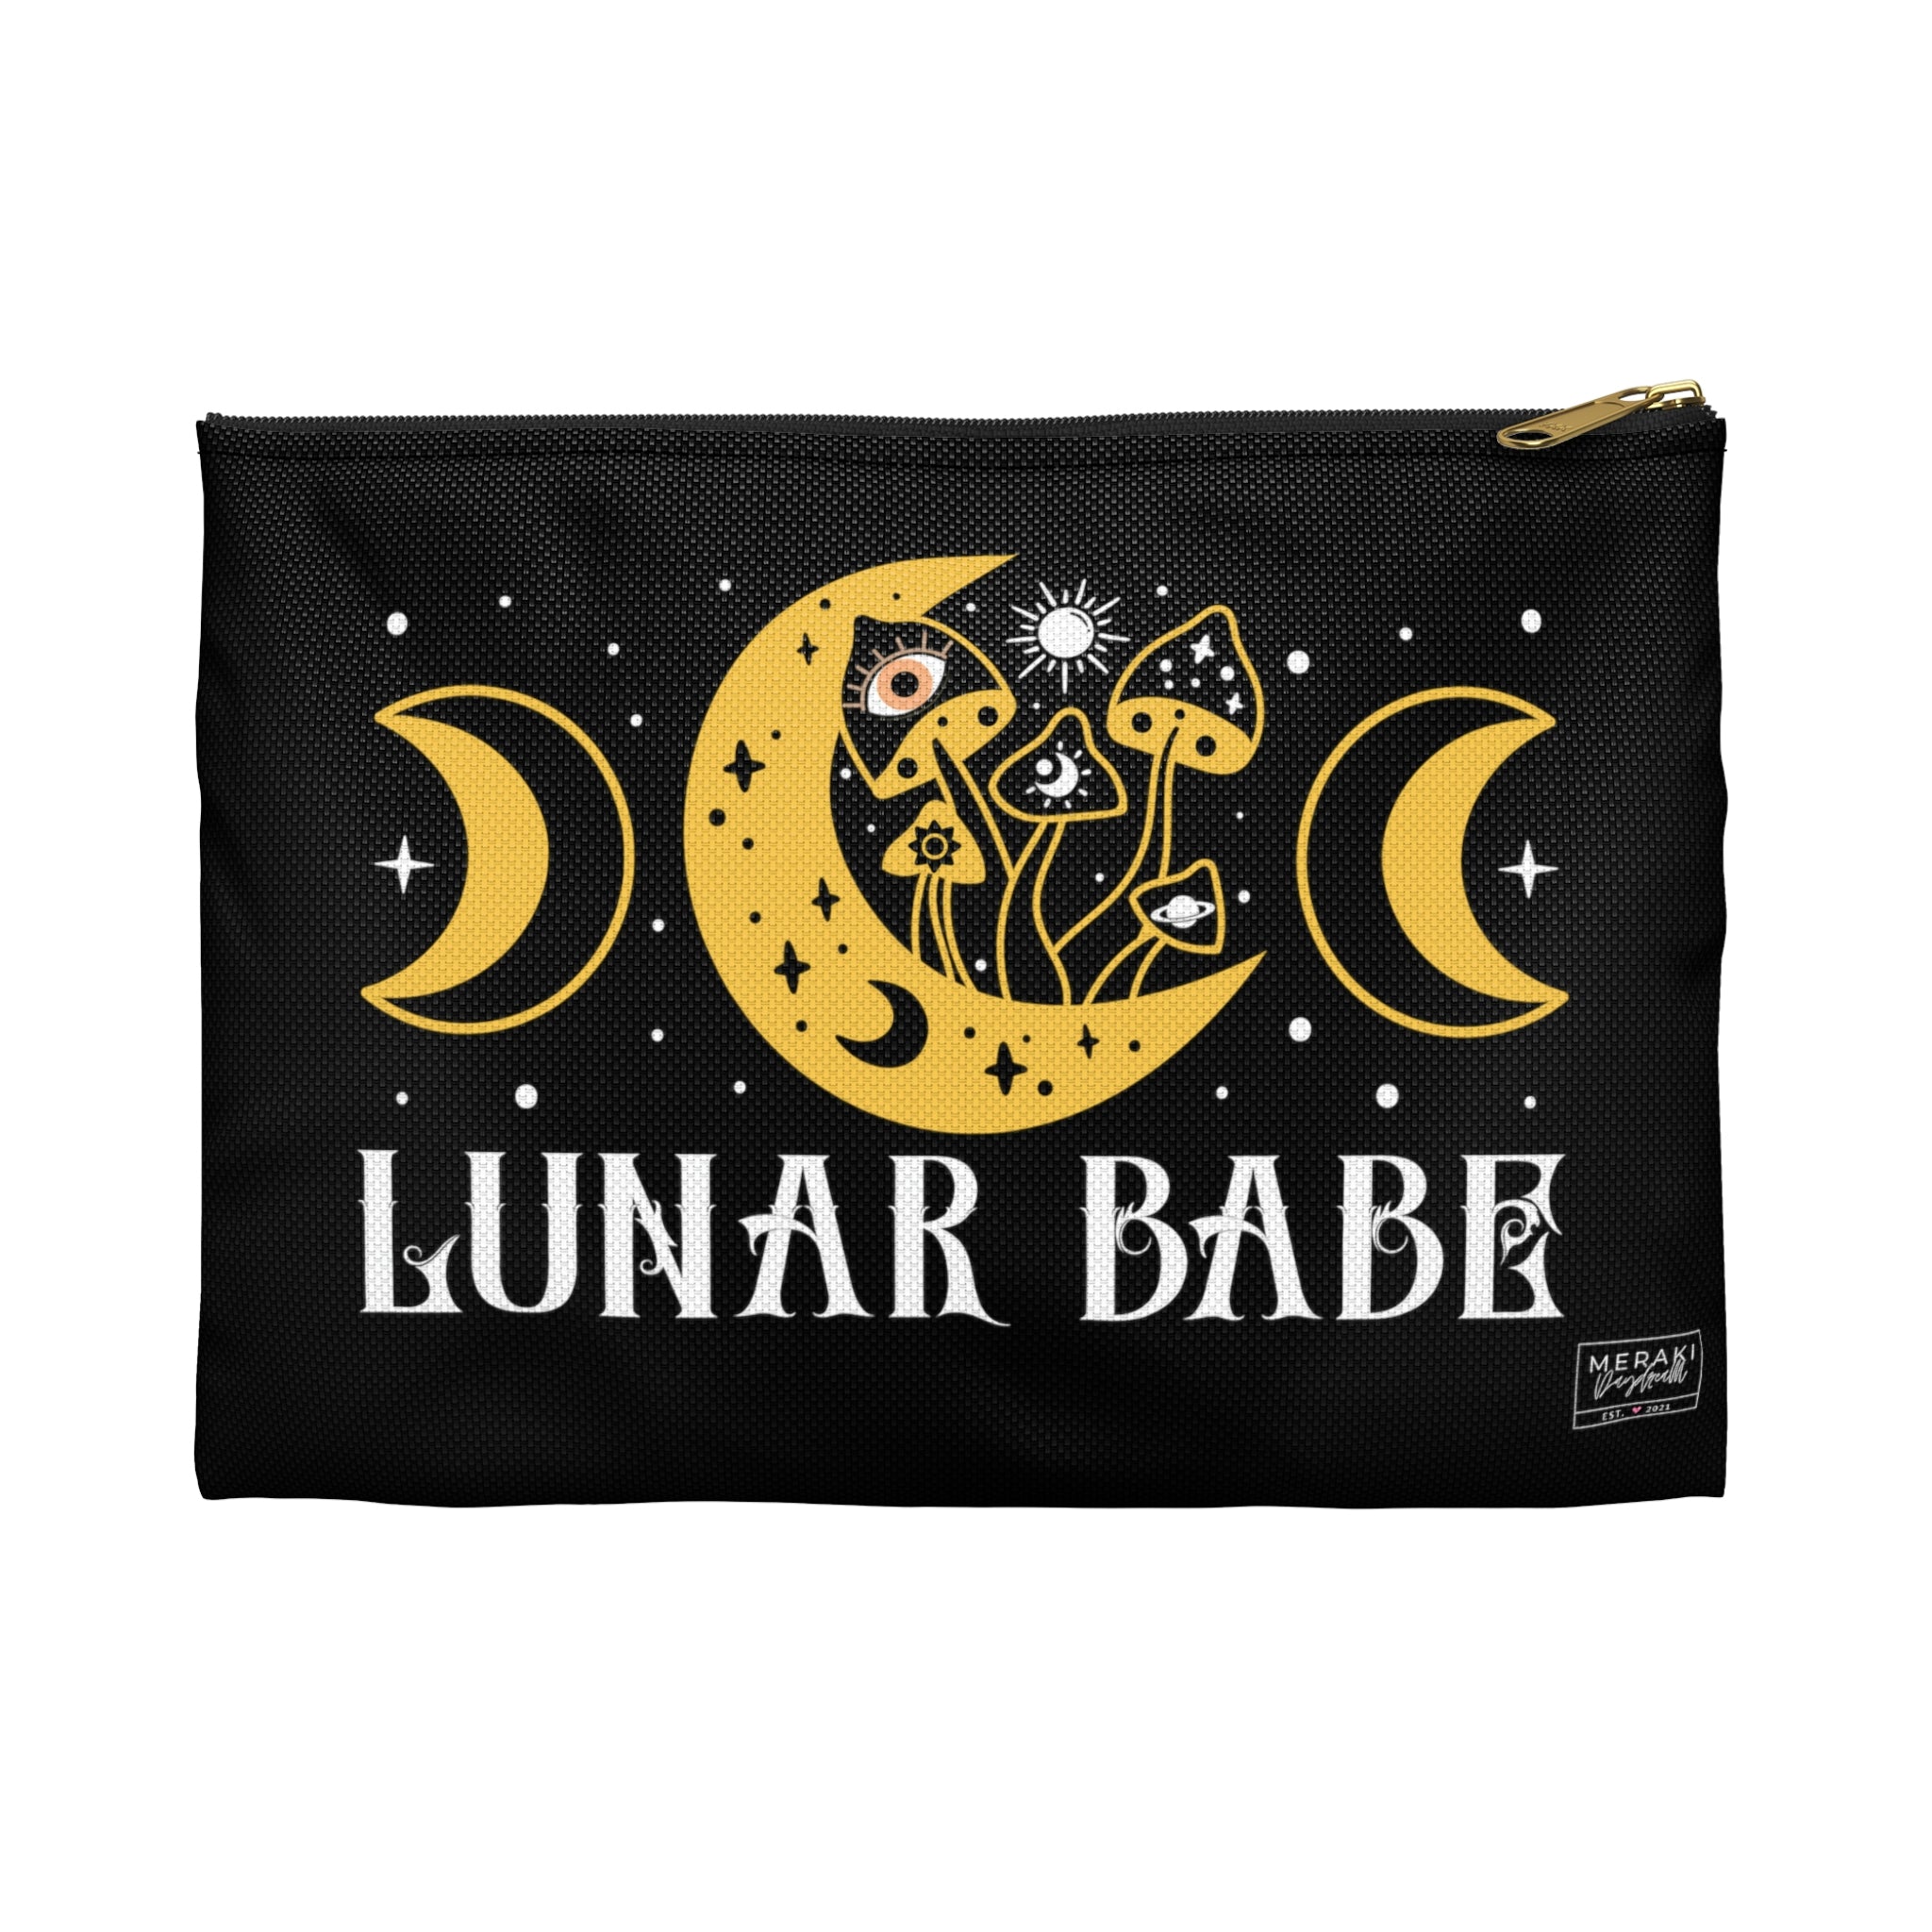 Lunar Babe Accessory Pouch - Meraki Daydream